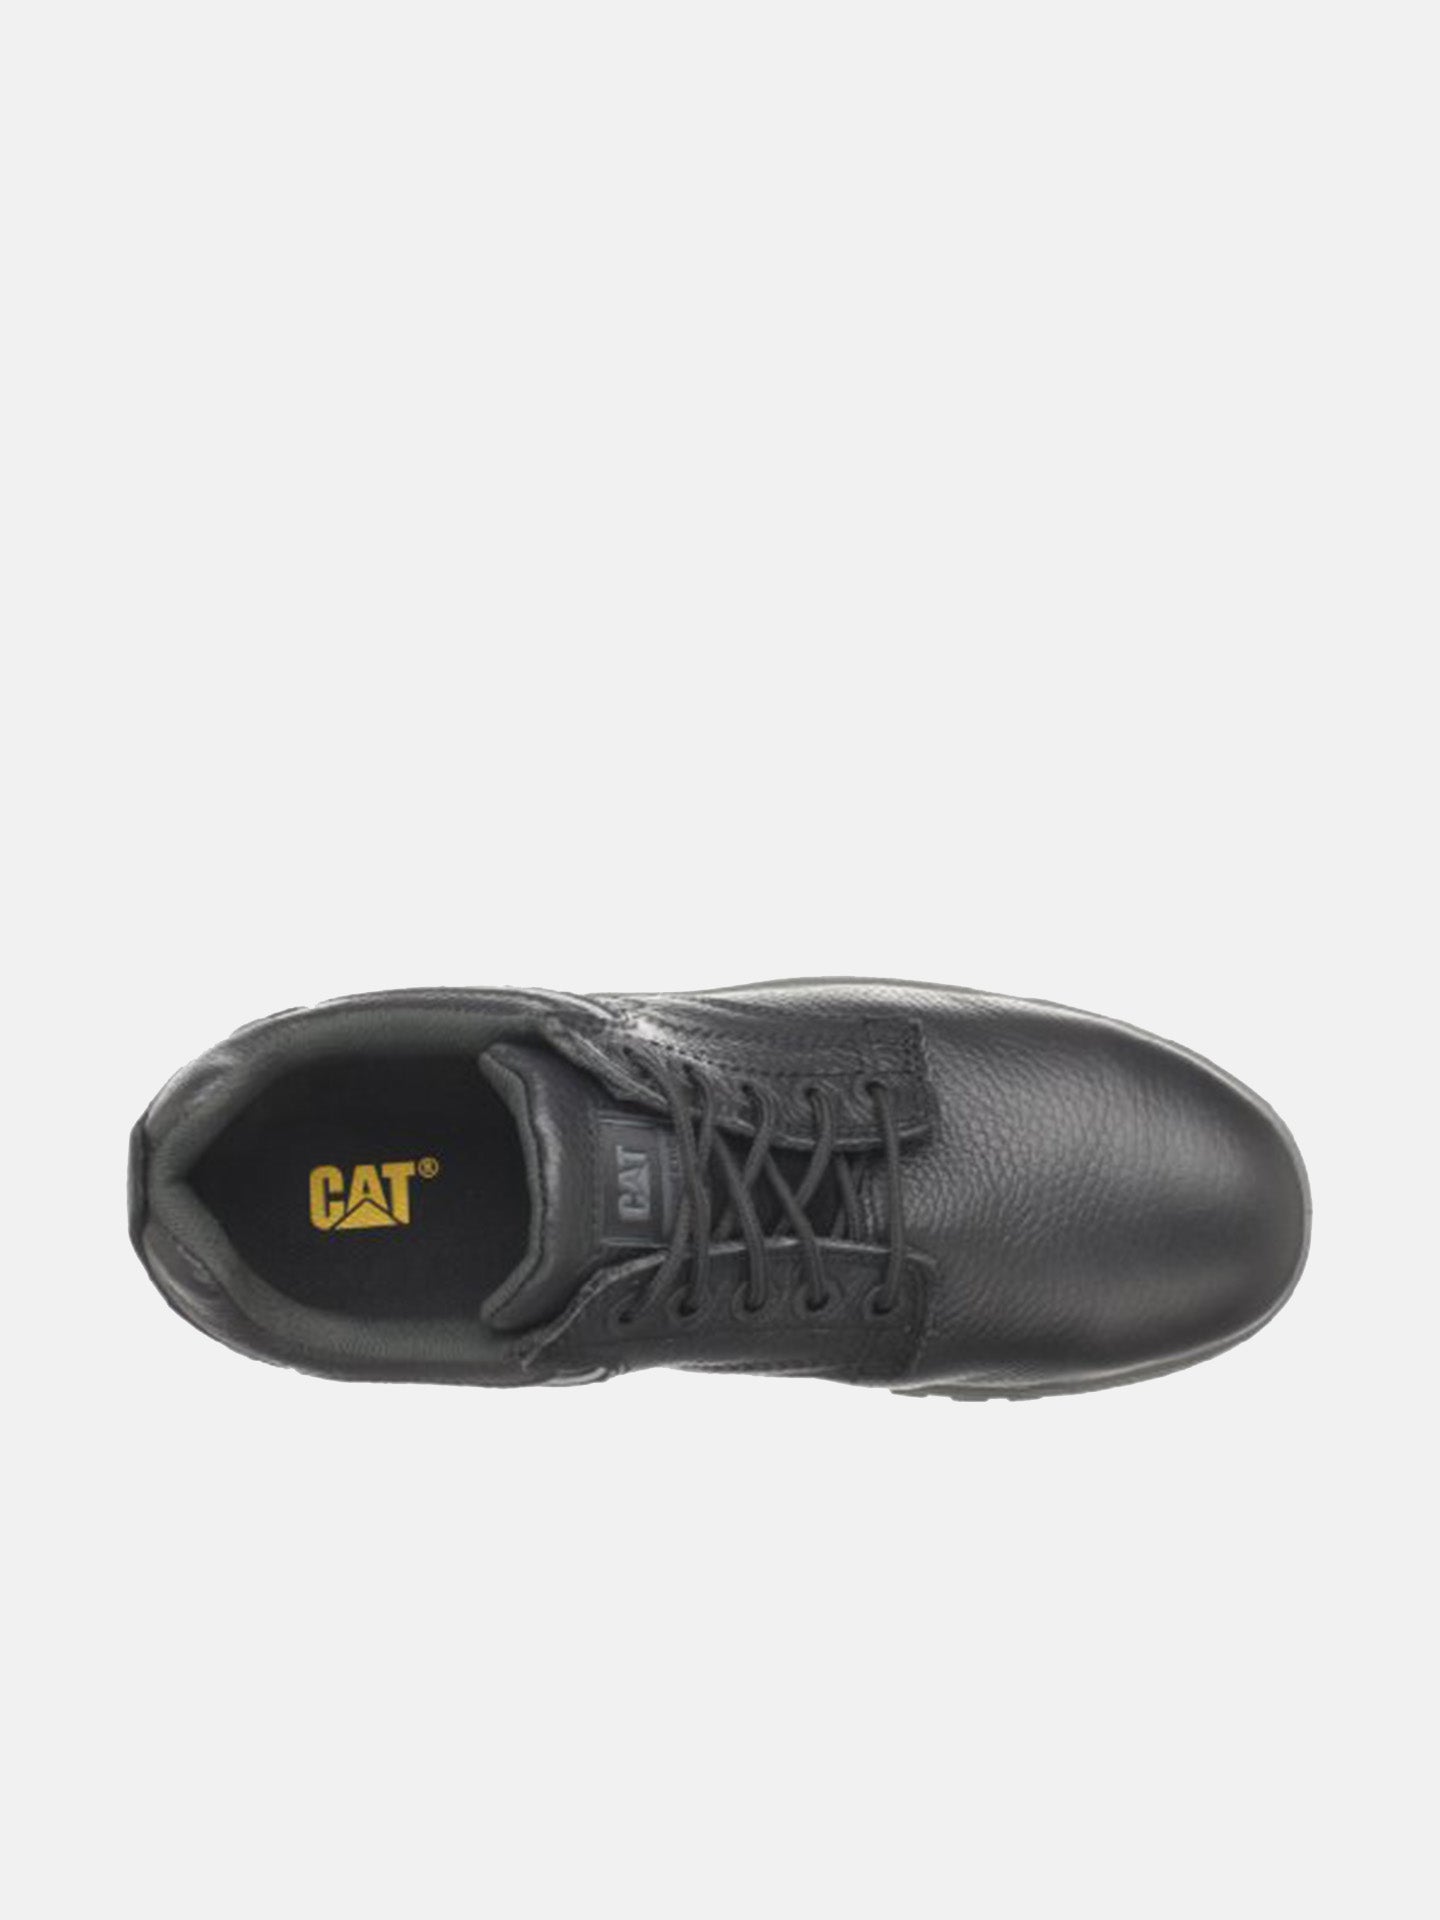 Caterpillar Men's Dimen Steel Toe Shoes #color_Black